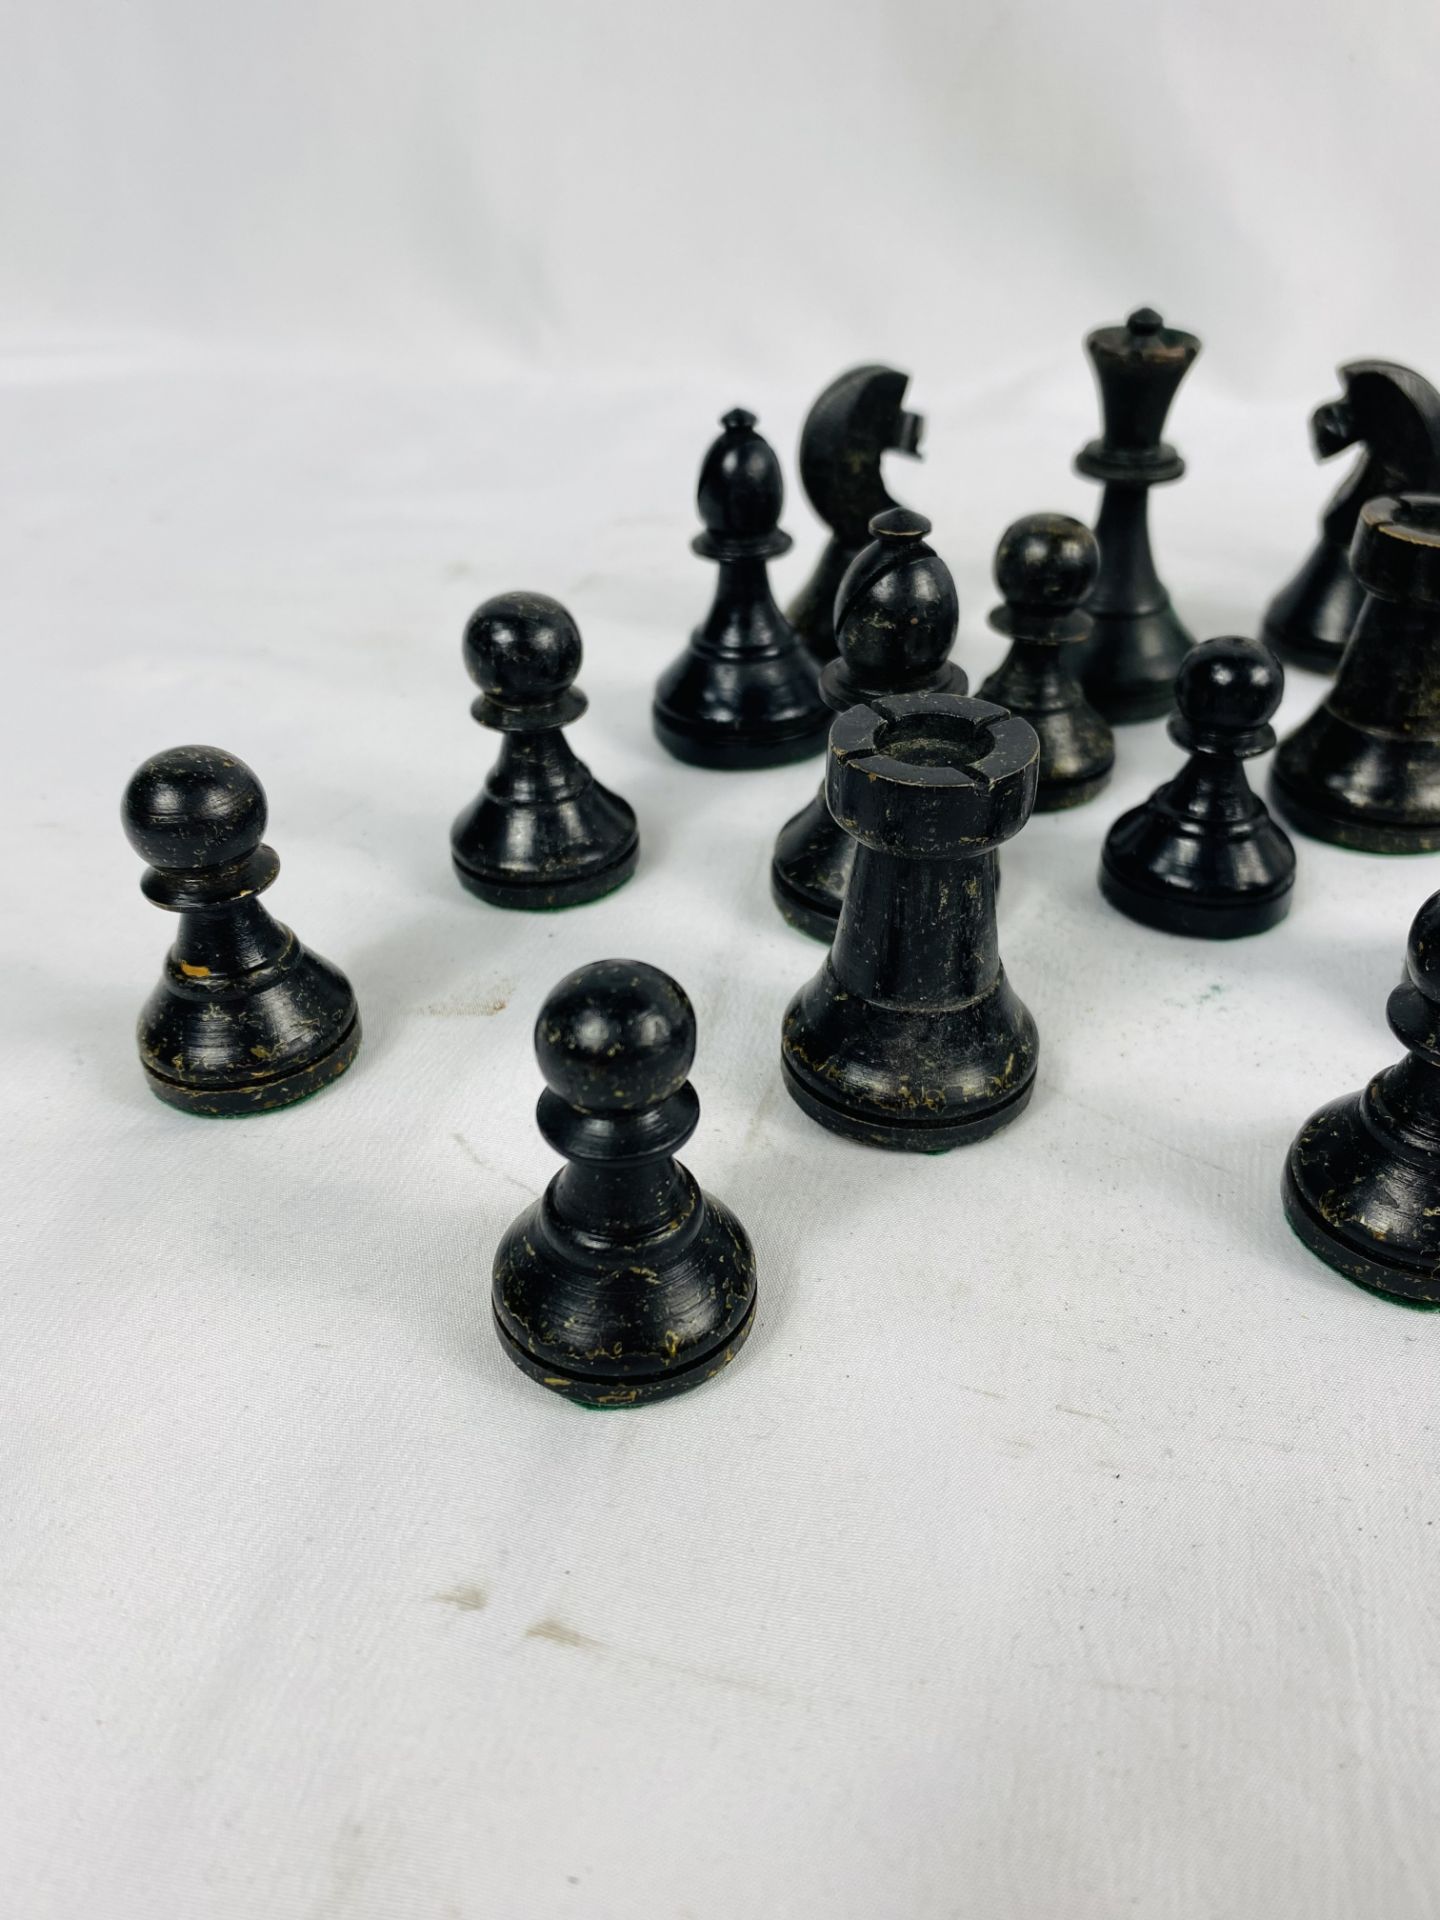 Boxwood chess set - Image 2 of 7